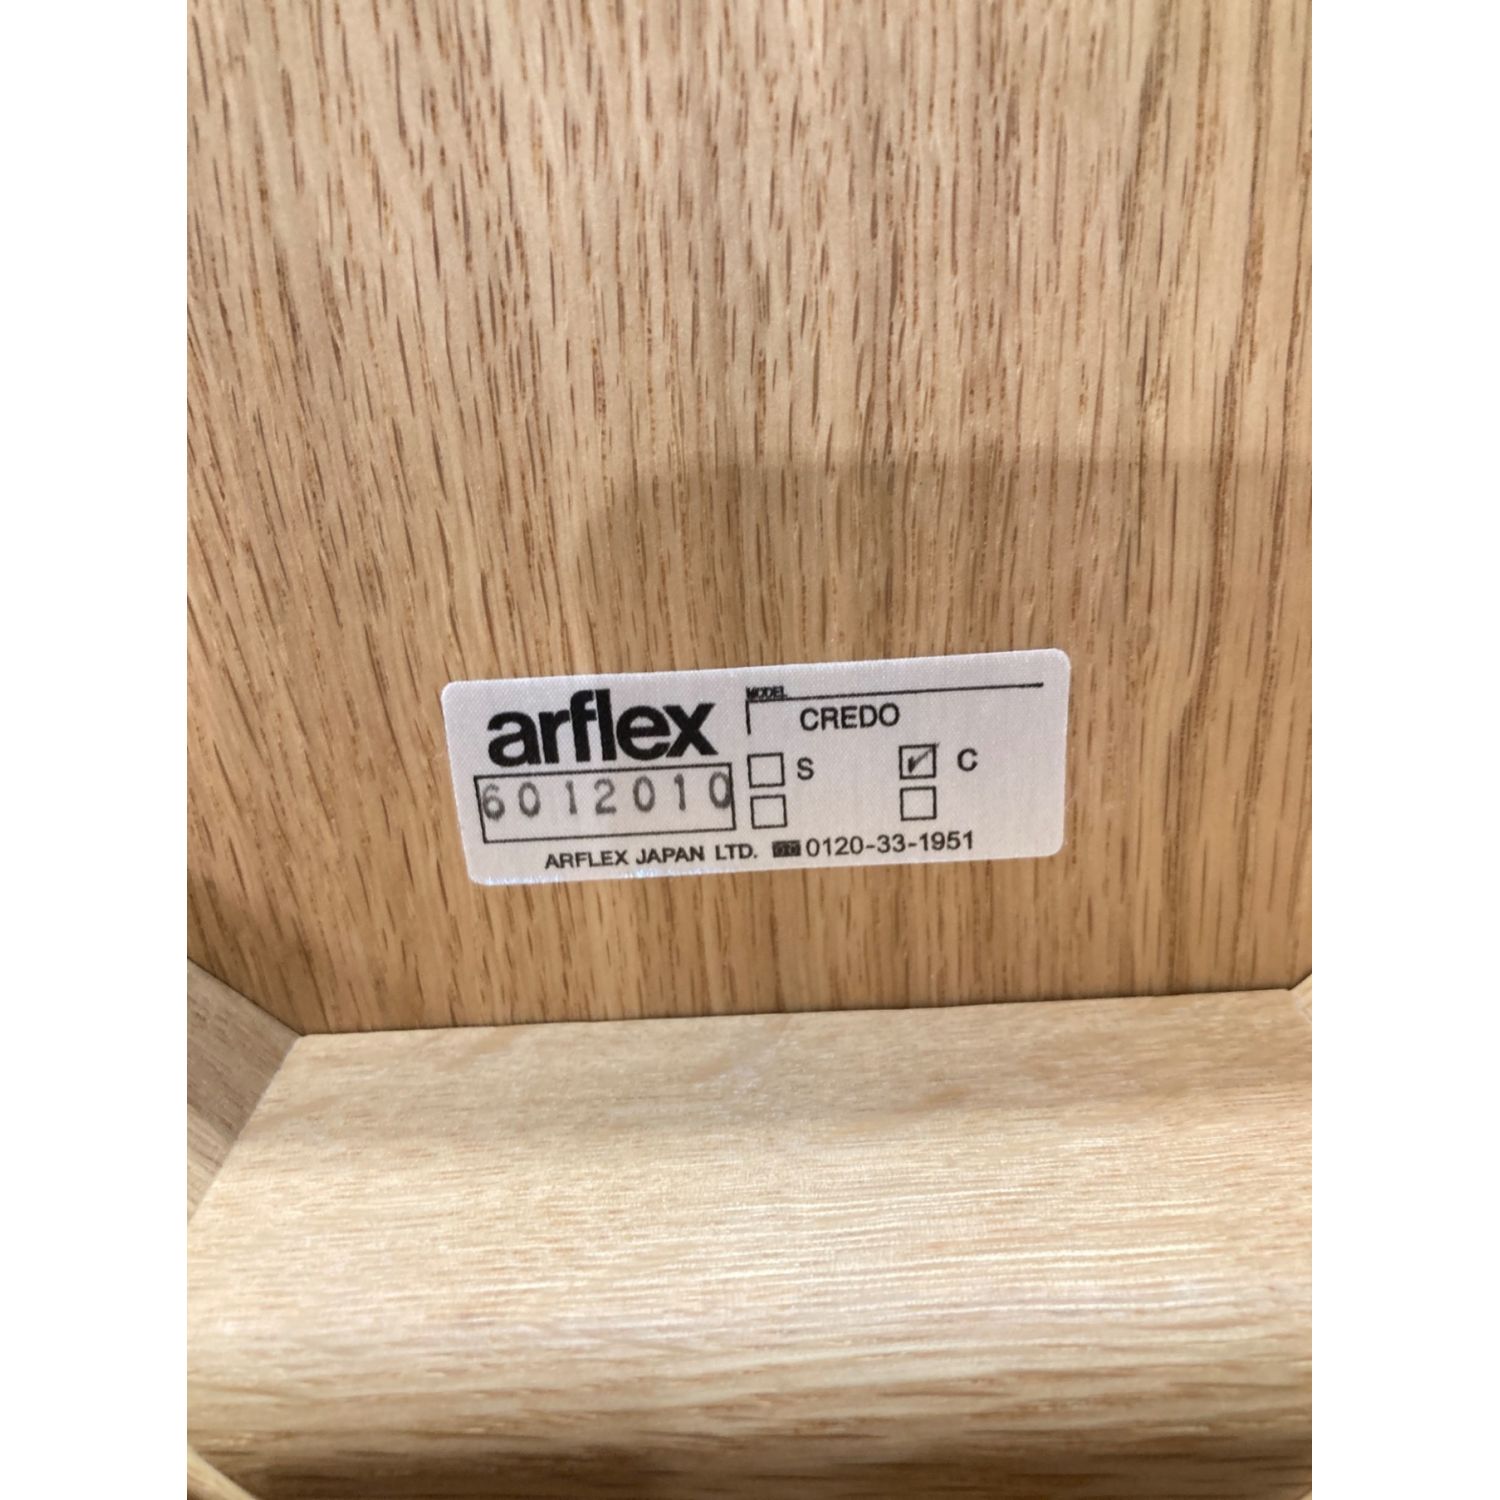 arflex (アルフレックス) カウンターチェアー ナチュラル ホワイト